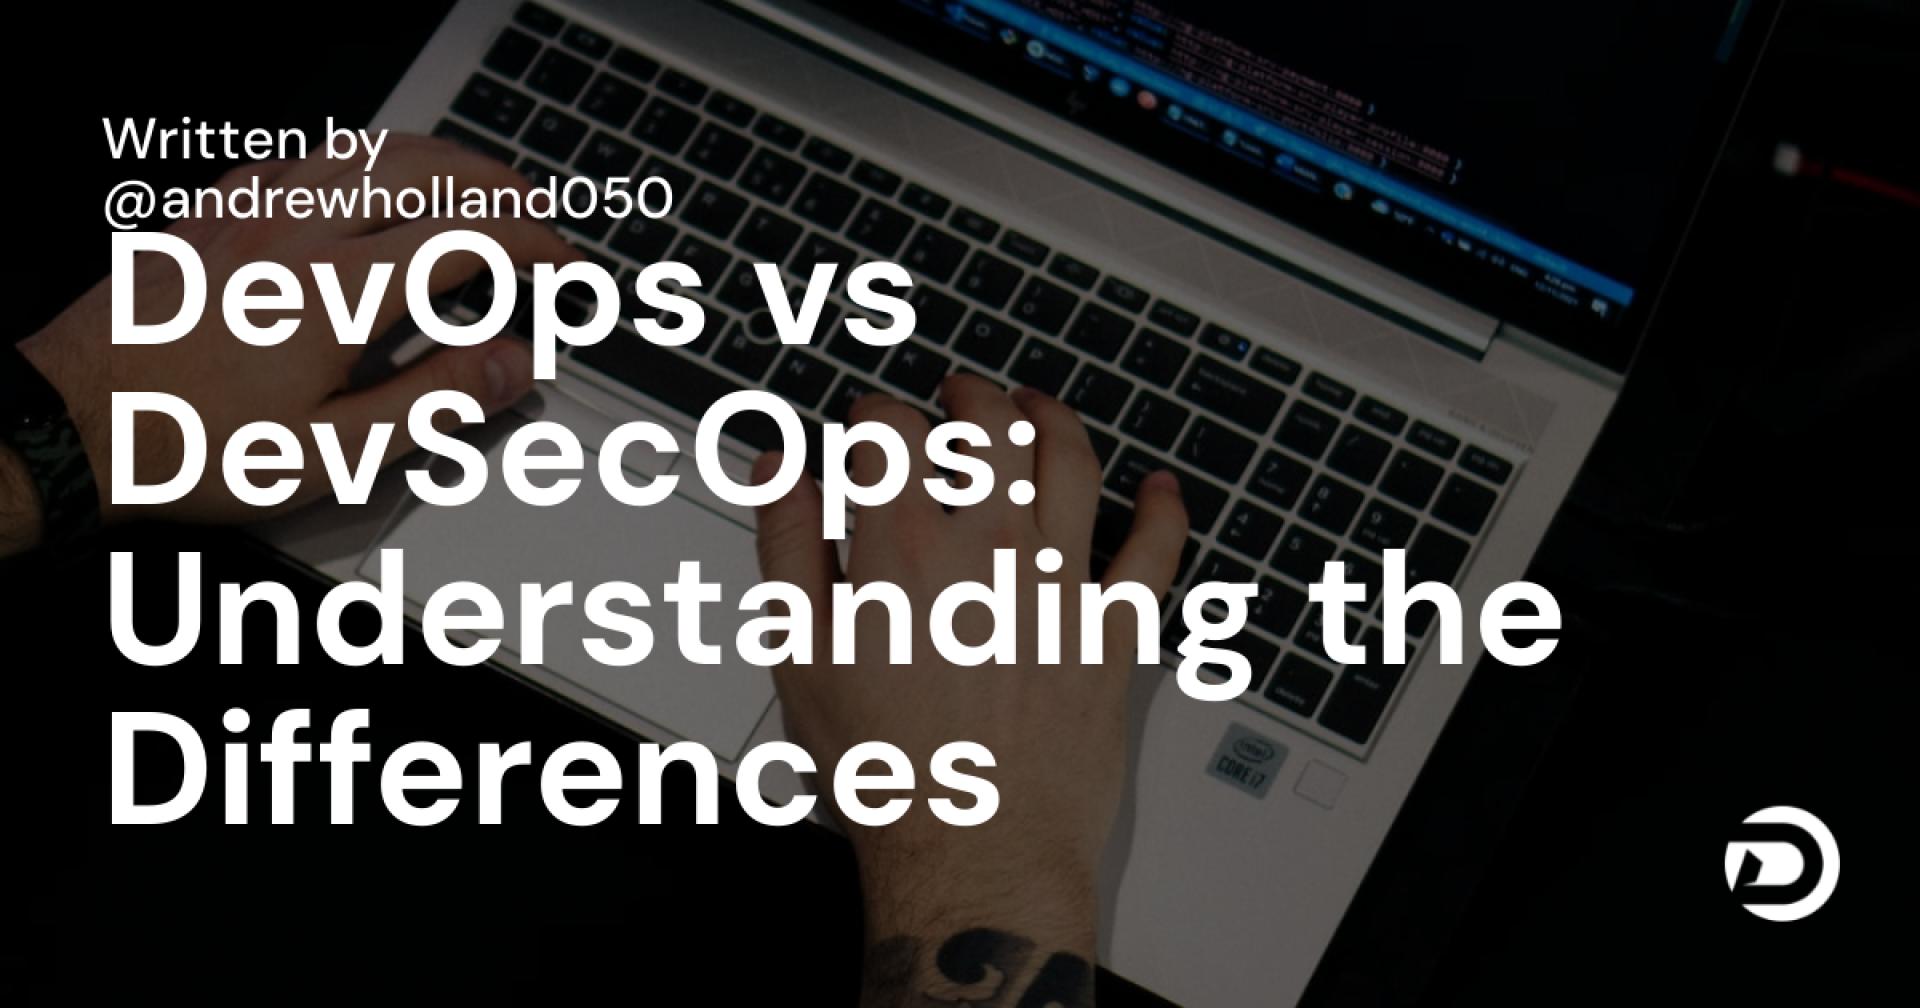 DevOps vs DevSecOps: Understanding the Differences